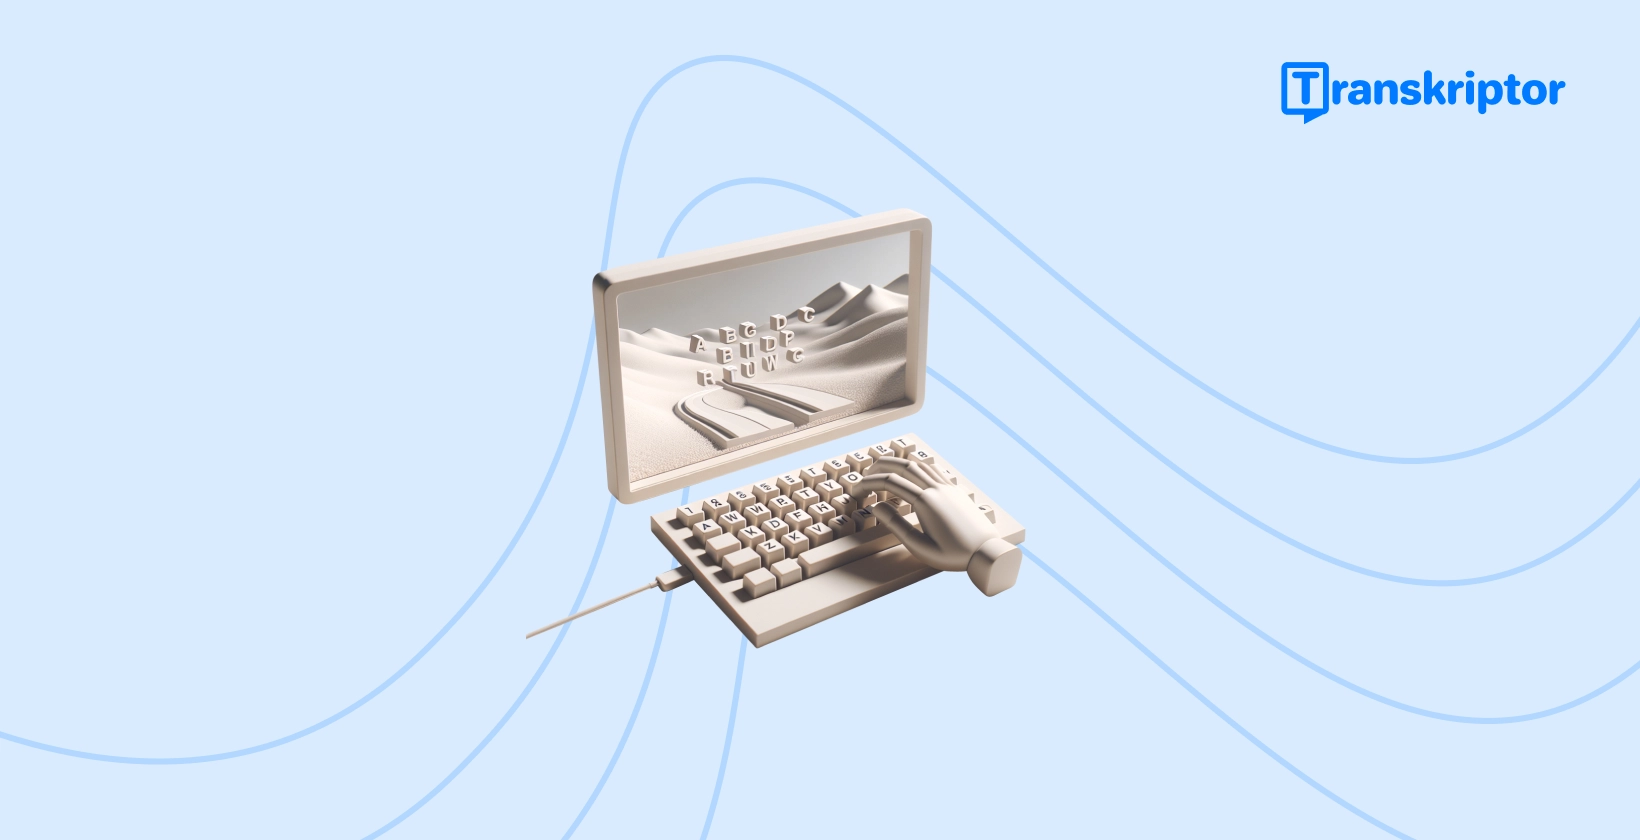 Một máy đánh chữ cổ điển với các phím tạo thành một phong cảnh trên cuộn giấy của nó, đại diện cho quá trình sáng tạo thêm phụ đề hấp dẫn vào video TikTok.